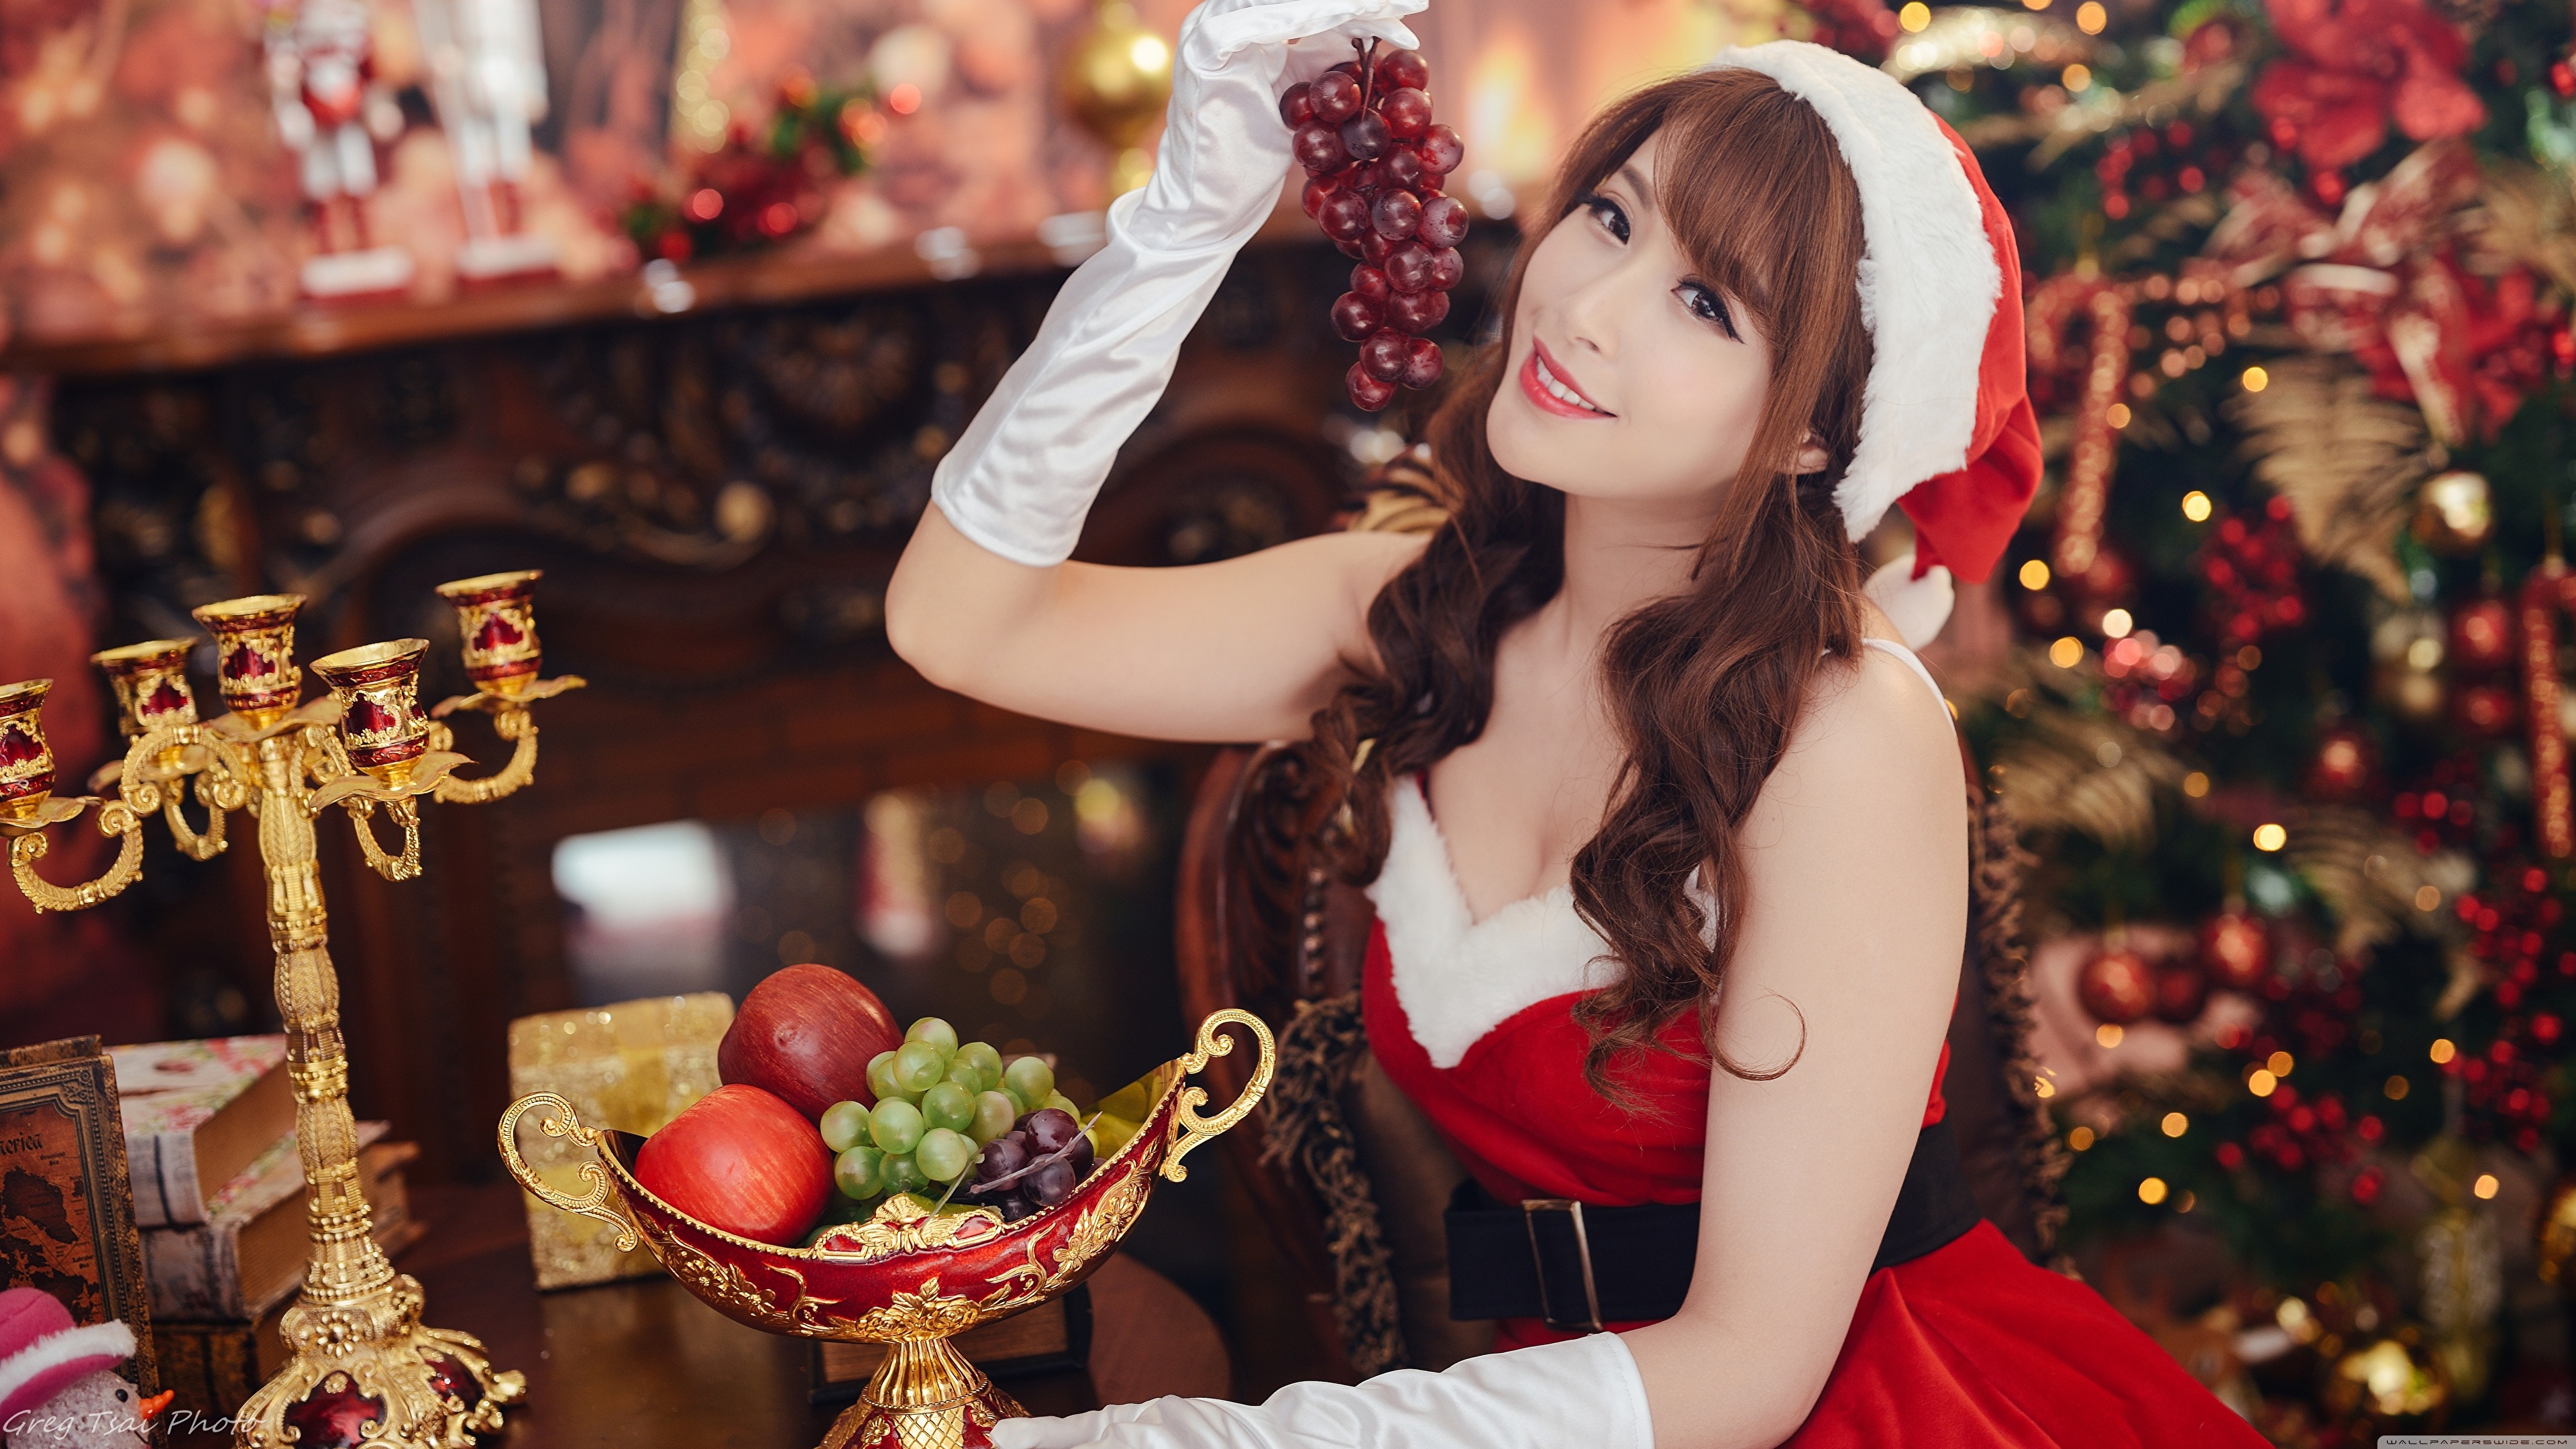 Asian Model Women Long Hair Brunette Christmas Red Dress Belt Candle Holder Fruit Bowl Hat 3840x2160